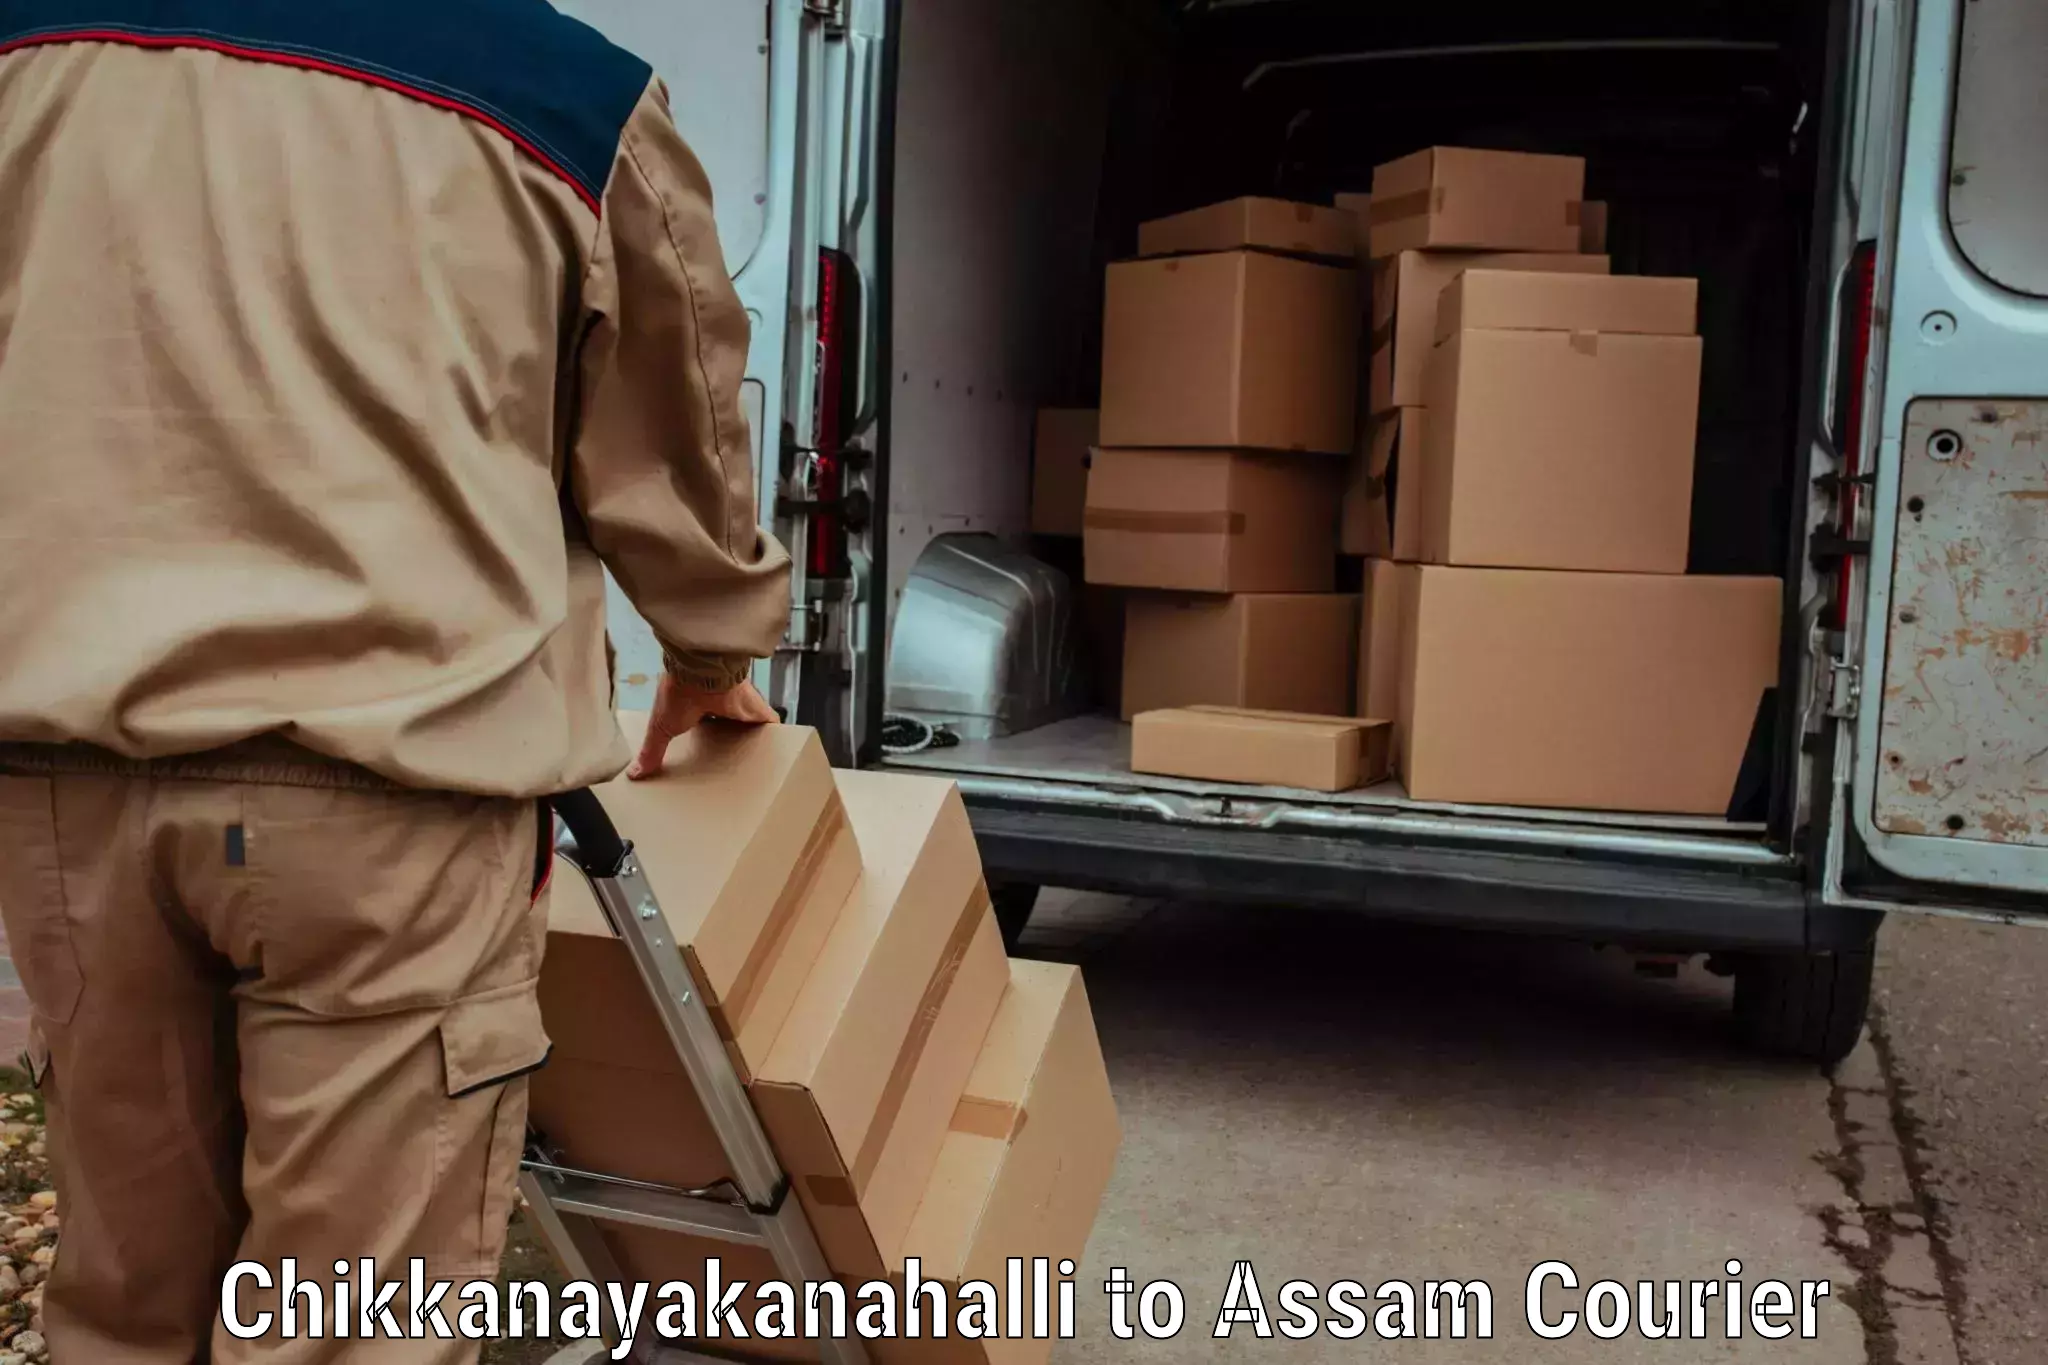 Weekend courier service Chikkanayakanahalli to Hailakandi